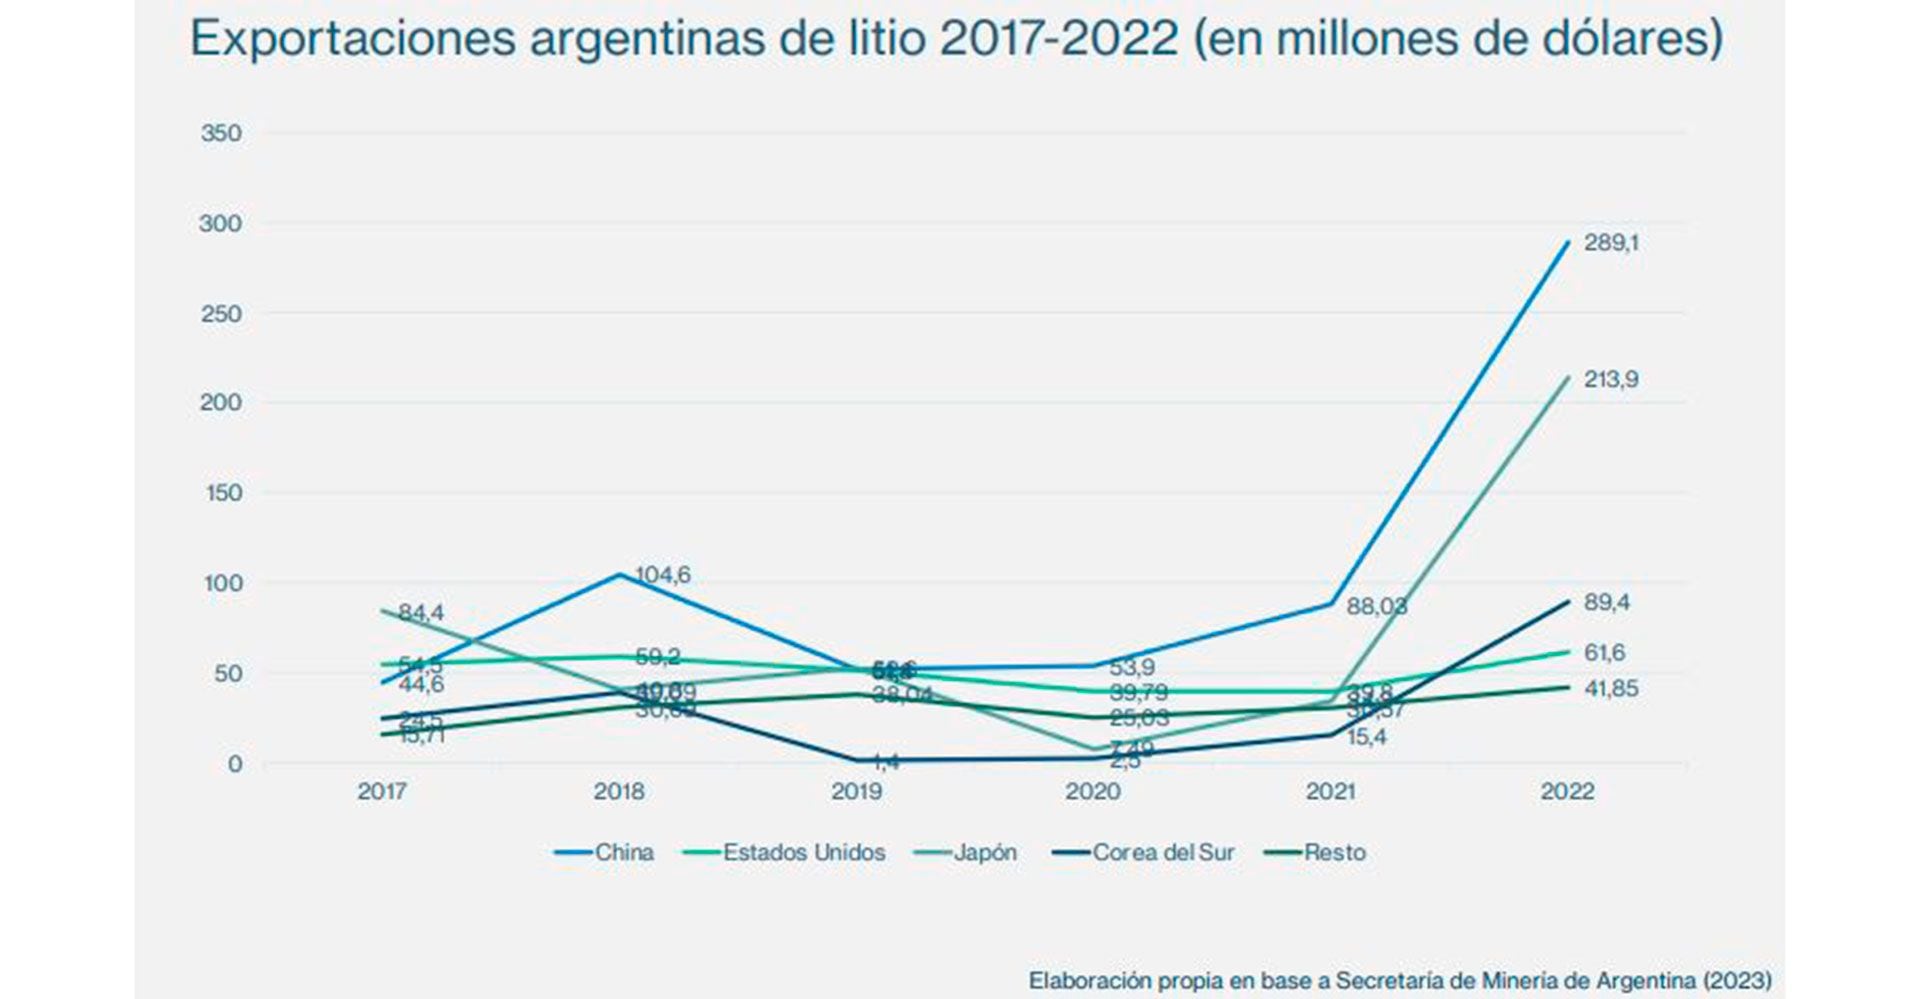 El estudio de Juliana González Jáuregui, investigadora de la Unsam, muestra los principales destinos de exportación del litio argentino